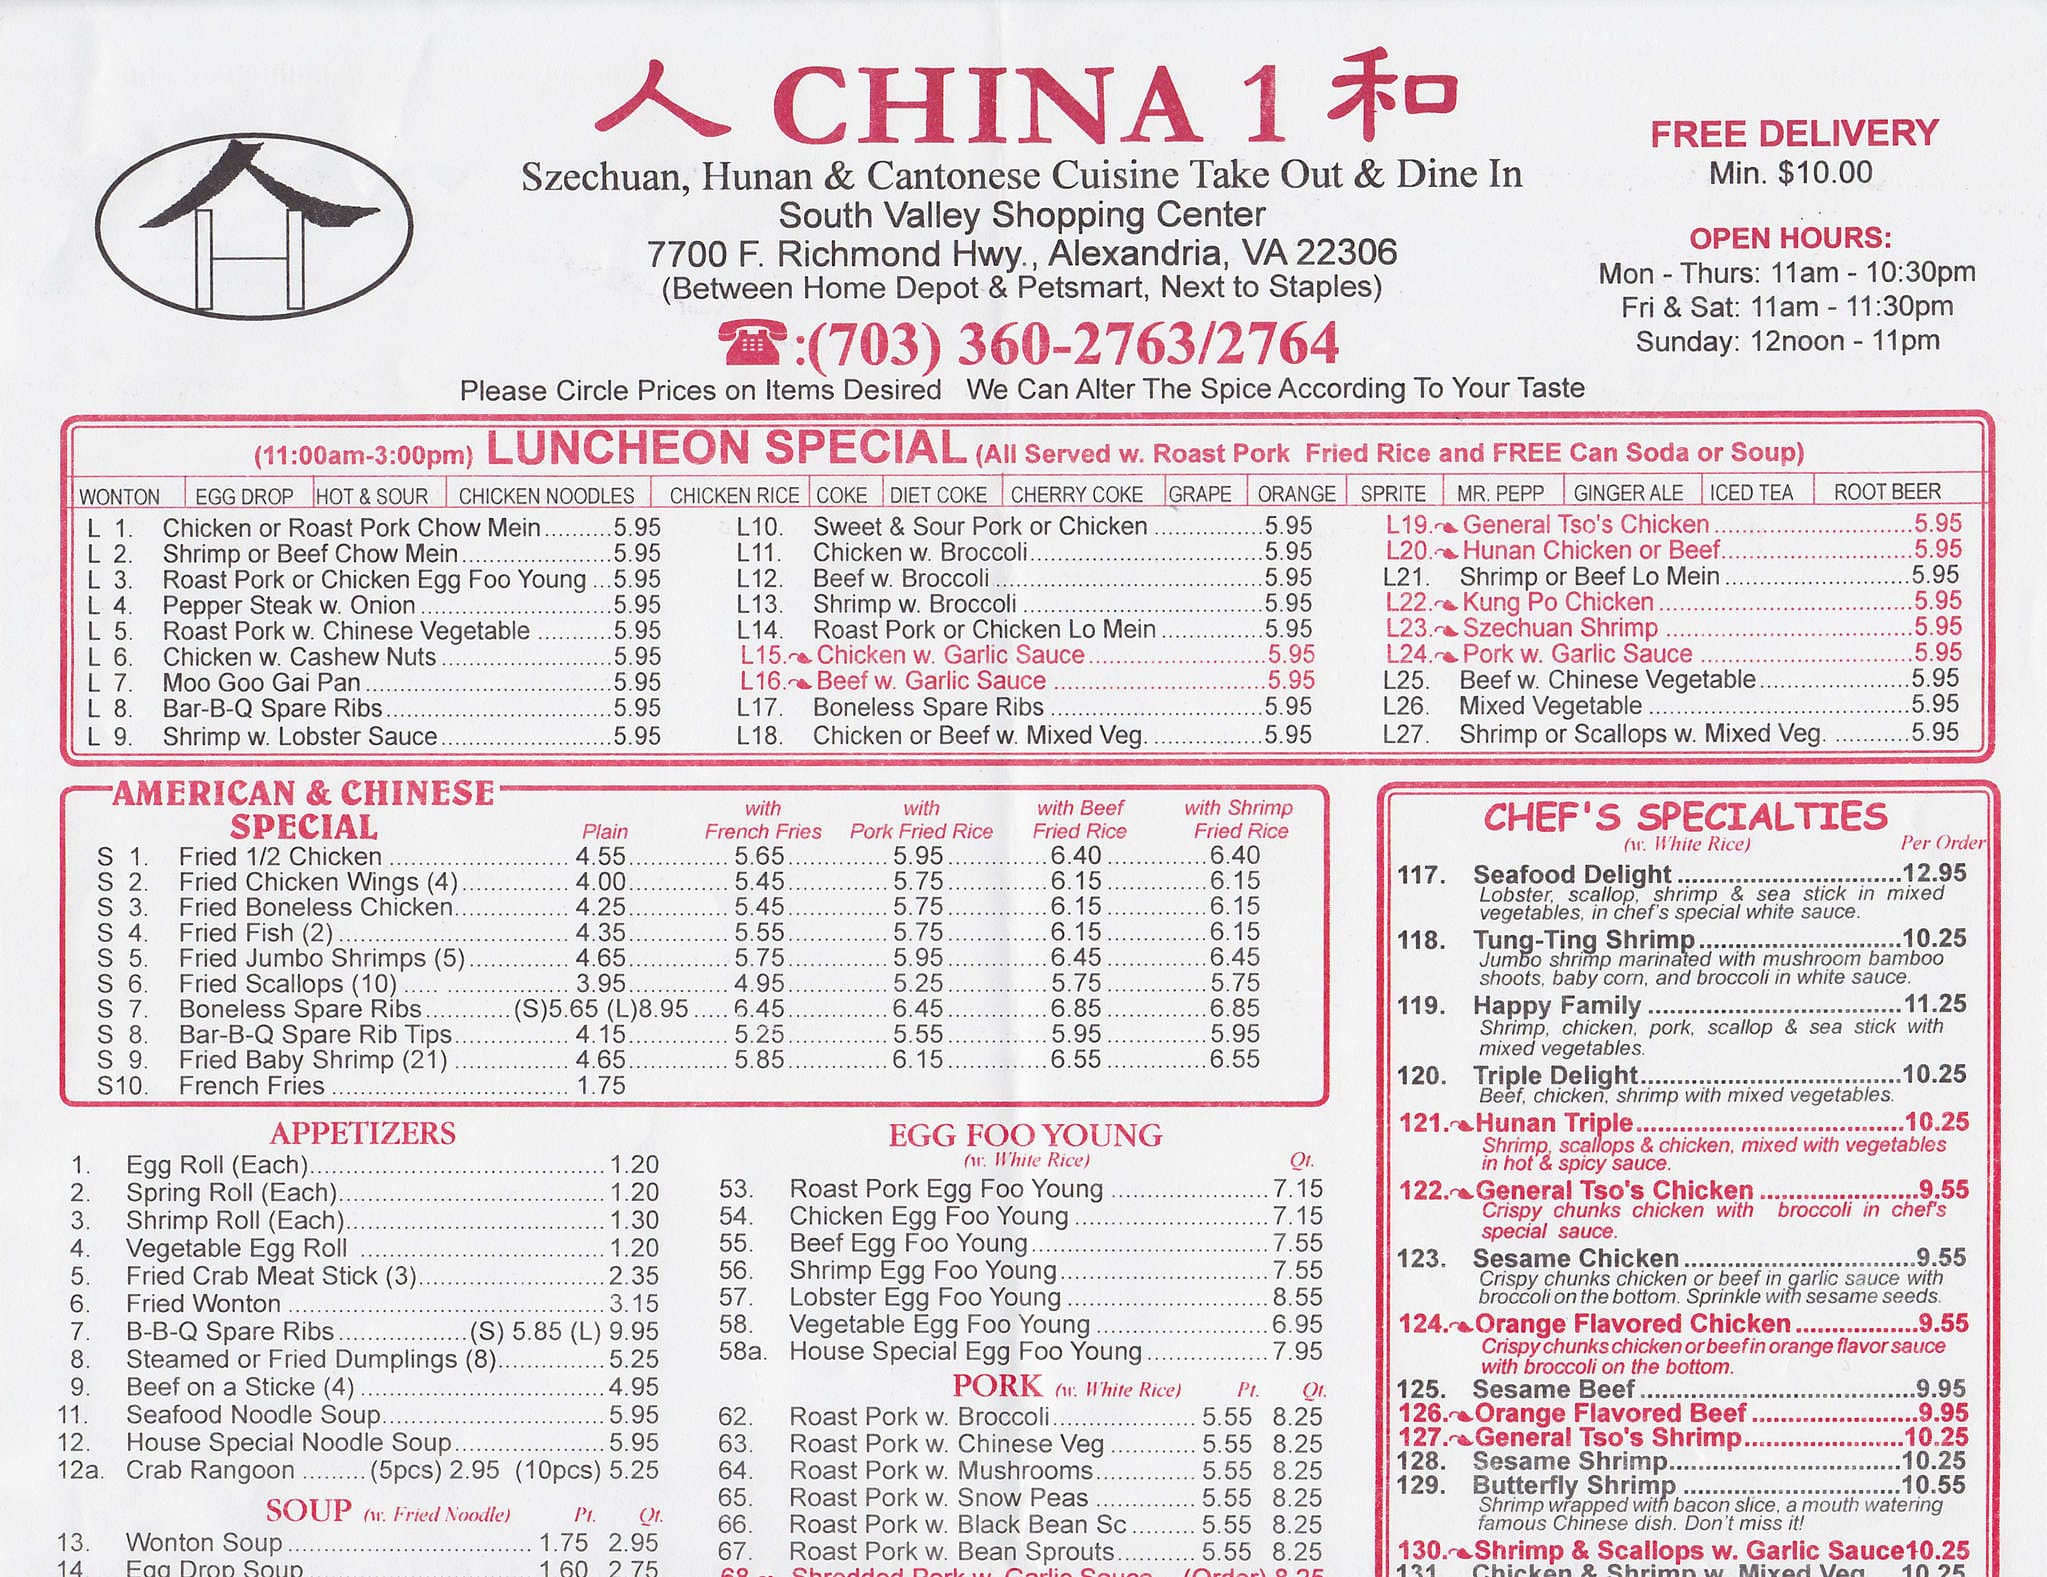 Chinese Food Alexandria Va 22306 - Food Ideas.